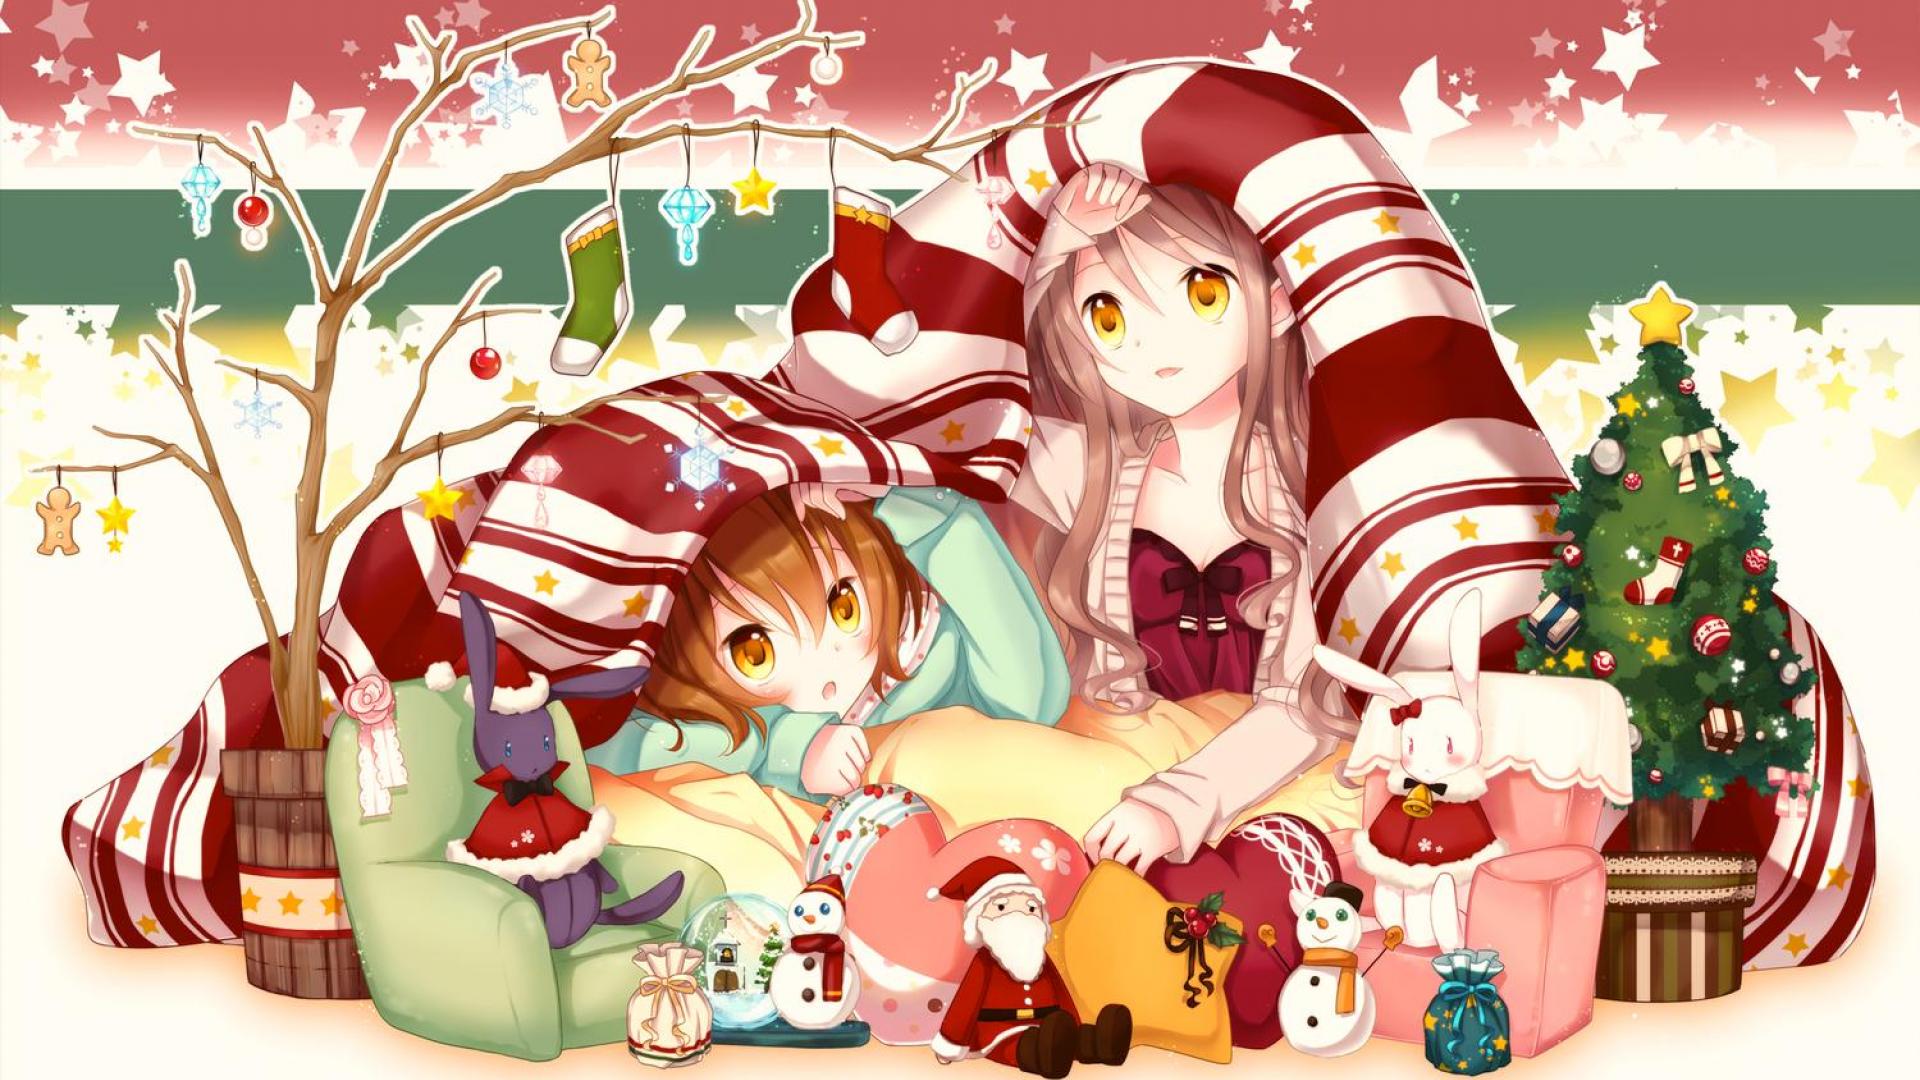 Cute Santa's Little Helper wallpaper - Anime wallpapers - #44451